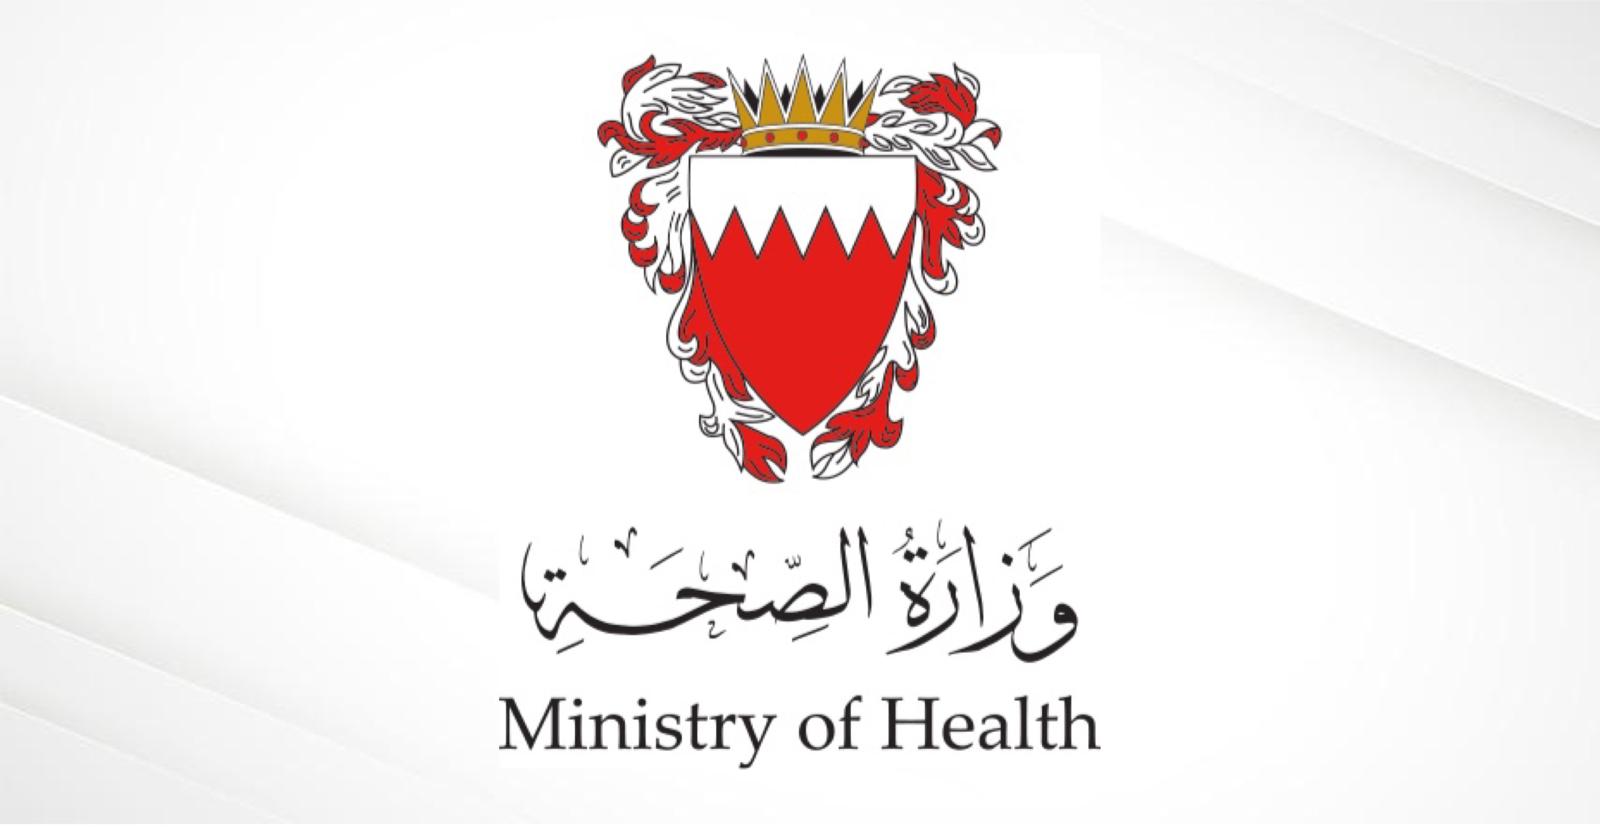 الصحة: رصد حالة قائمة بالمتحور "أوميكرون" قادمة من خارج البحرين ولا وجود لمخالطين داخل المملكة